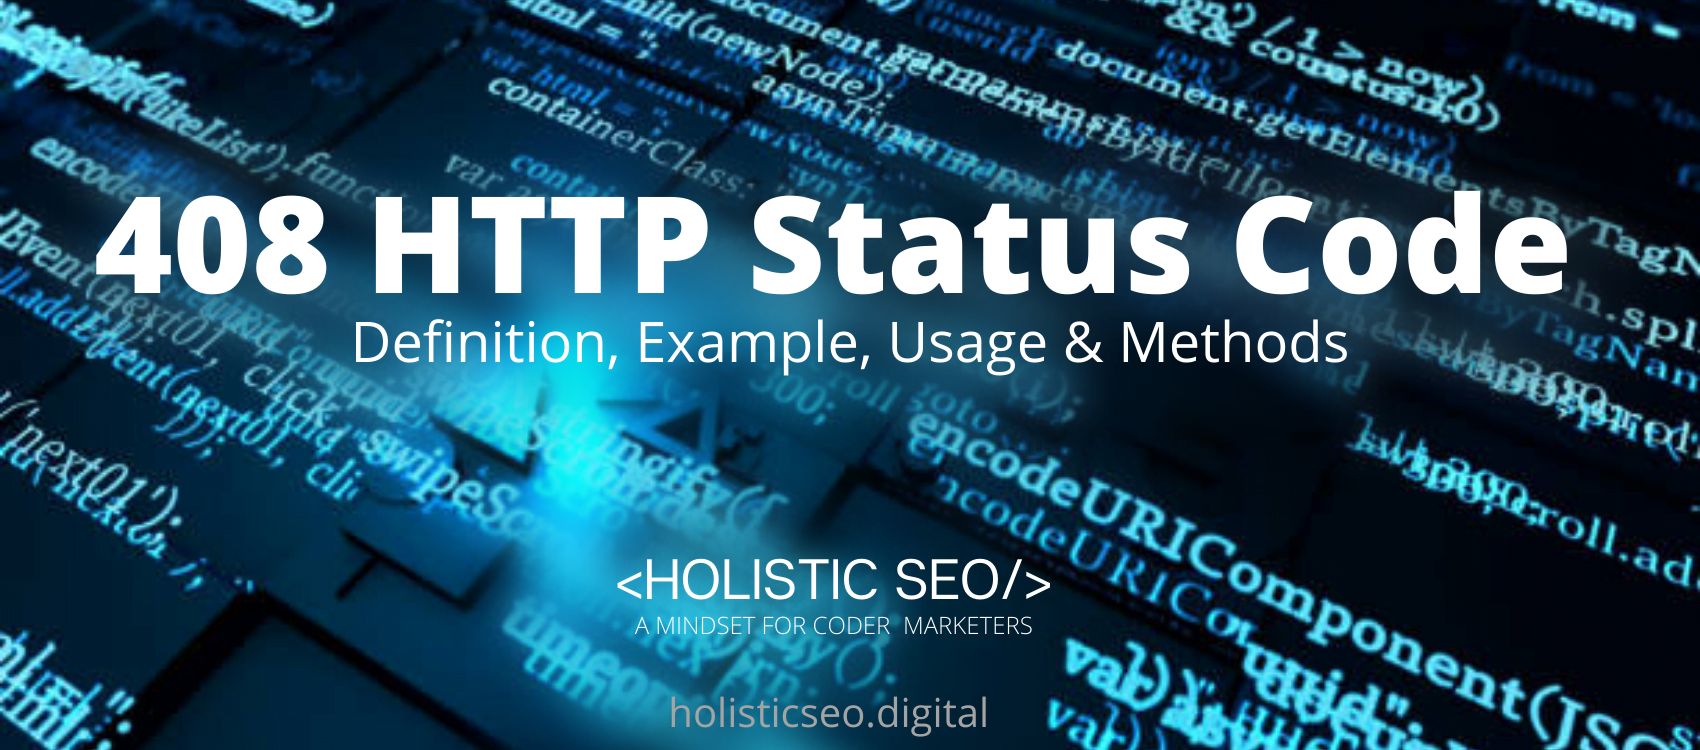 408 HTTP Status Code